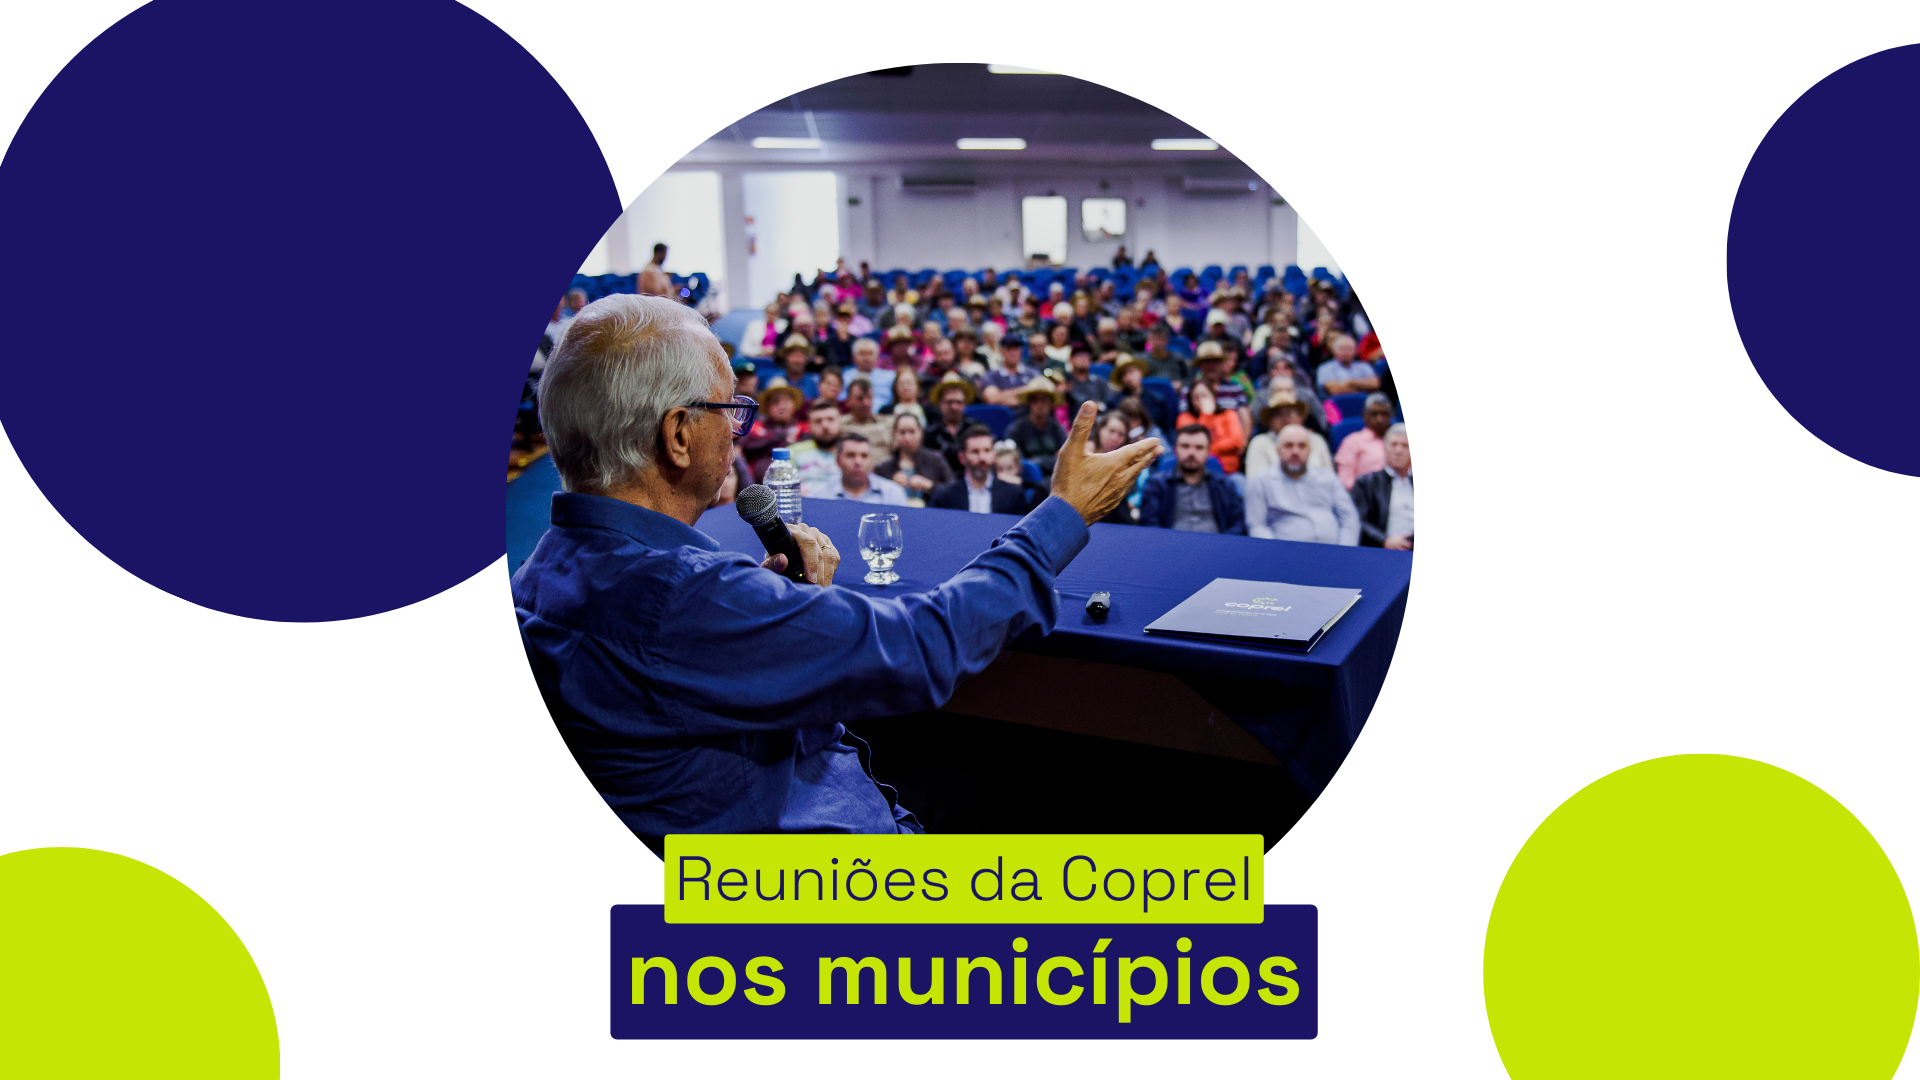 Coprel conclui cronograma anual de reuniões nos municípios